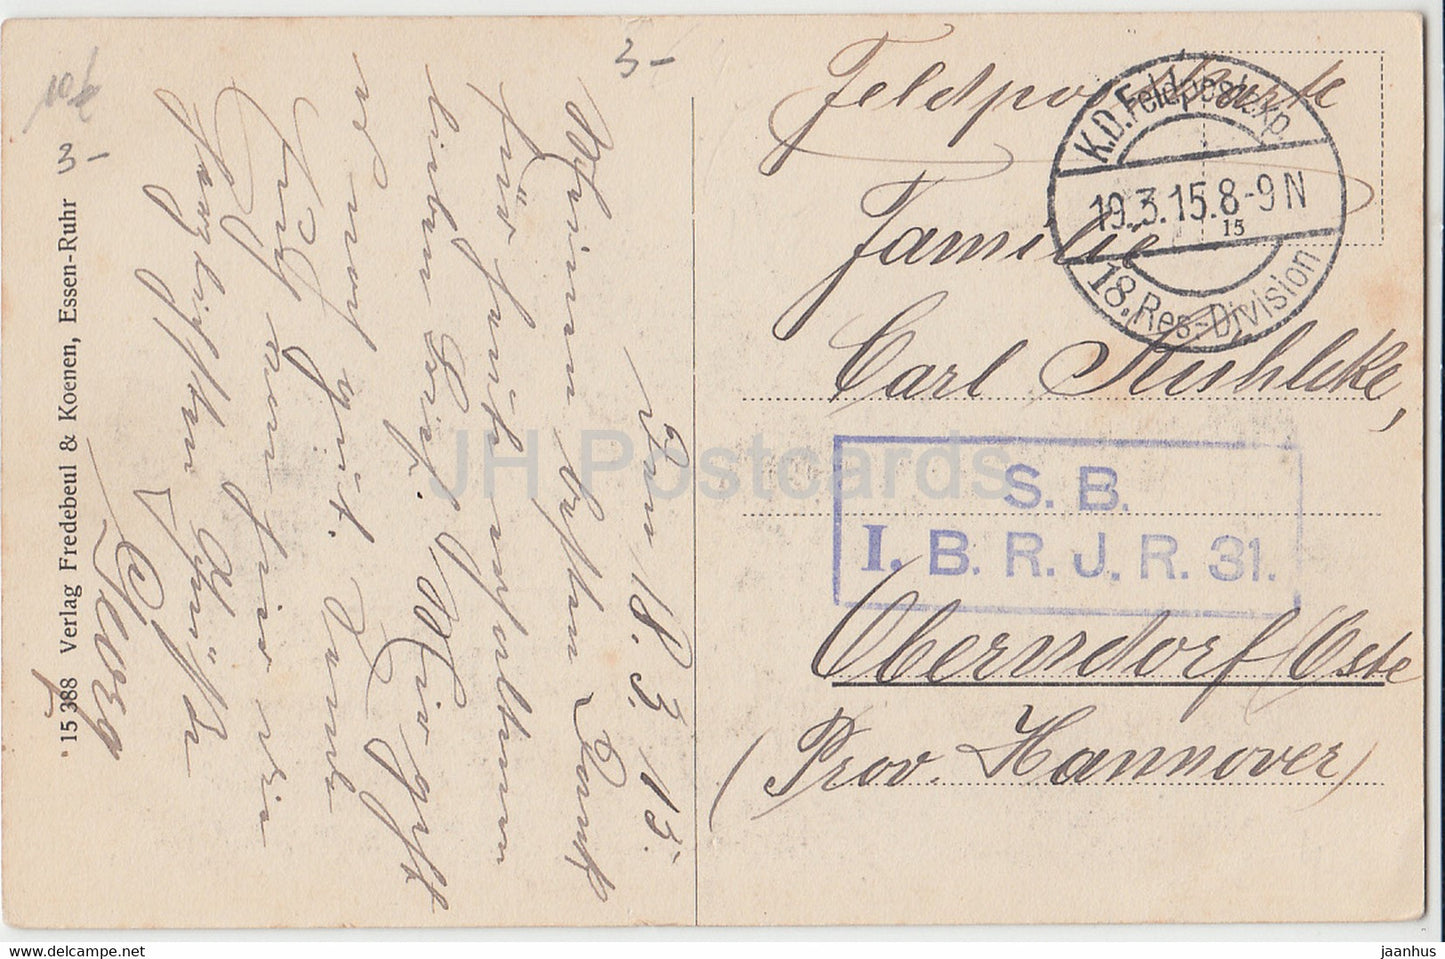 Noyon - Cathedrale - Abside - 18 Res Division - Feldpost - alte Postkarte - 1915 - Frankreich - gebraucht